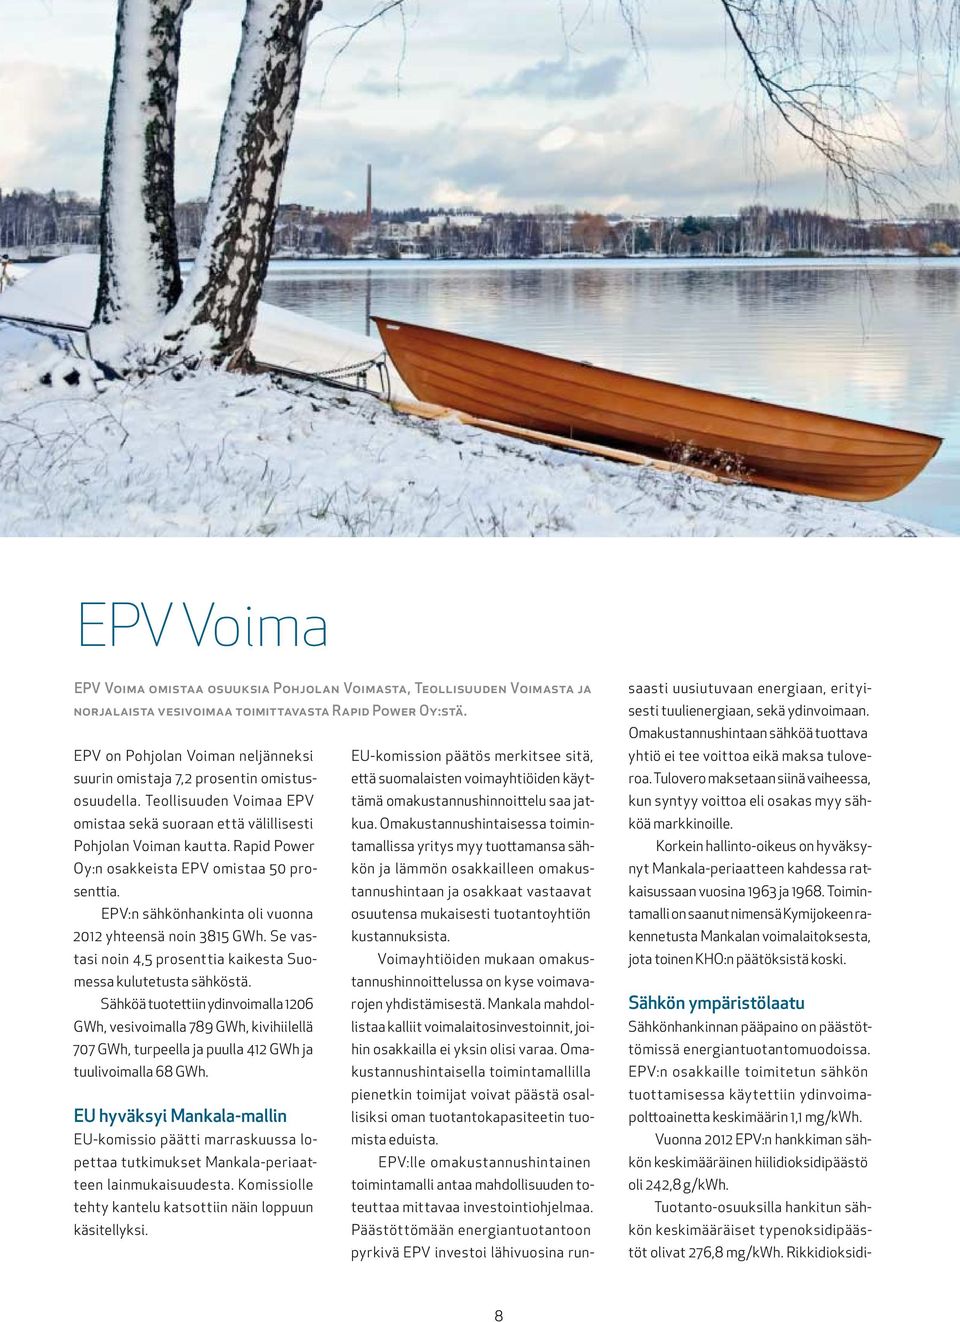 Teollisuuden Voimaa EPV tämä omakustannushinnoittelu saa jat- että suomalaisten voimayhtiöiden käyt- omistaa sekä suoraan että välillisesti kua.